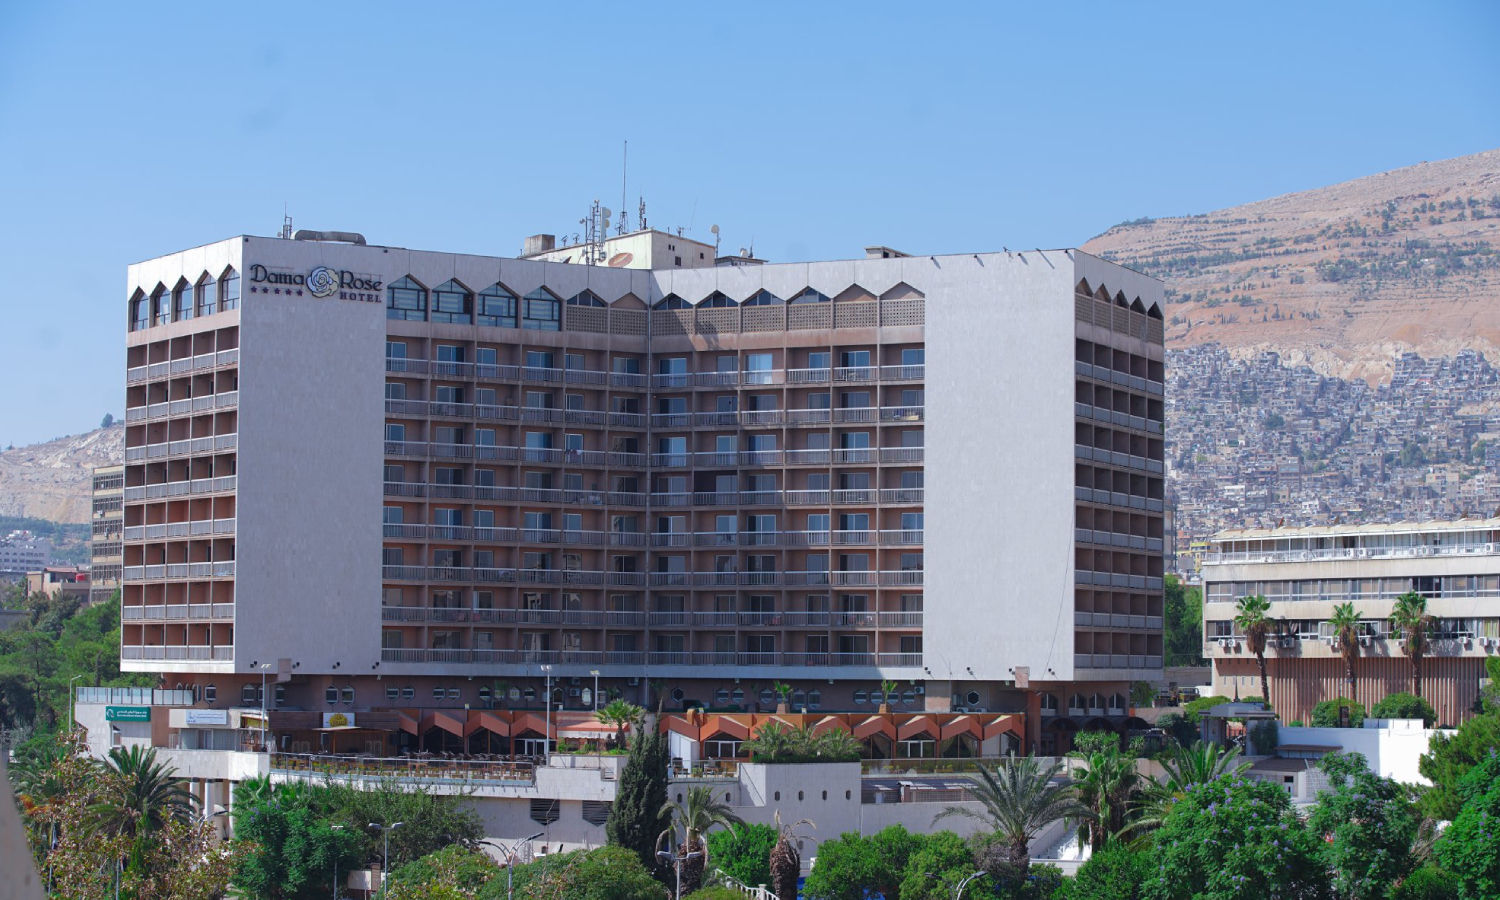 فندق "داما روز" في دمشق (صفحة الفندق الرسمية في "فيس بوك")